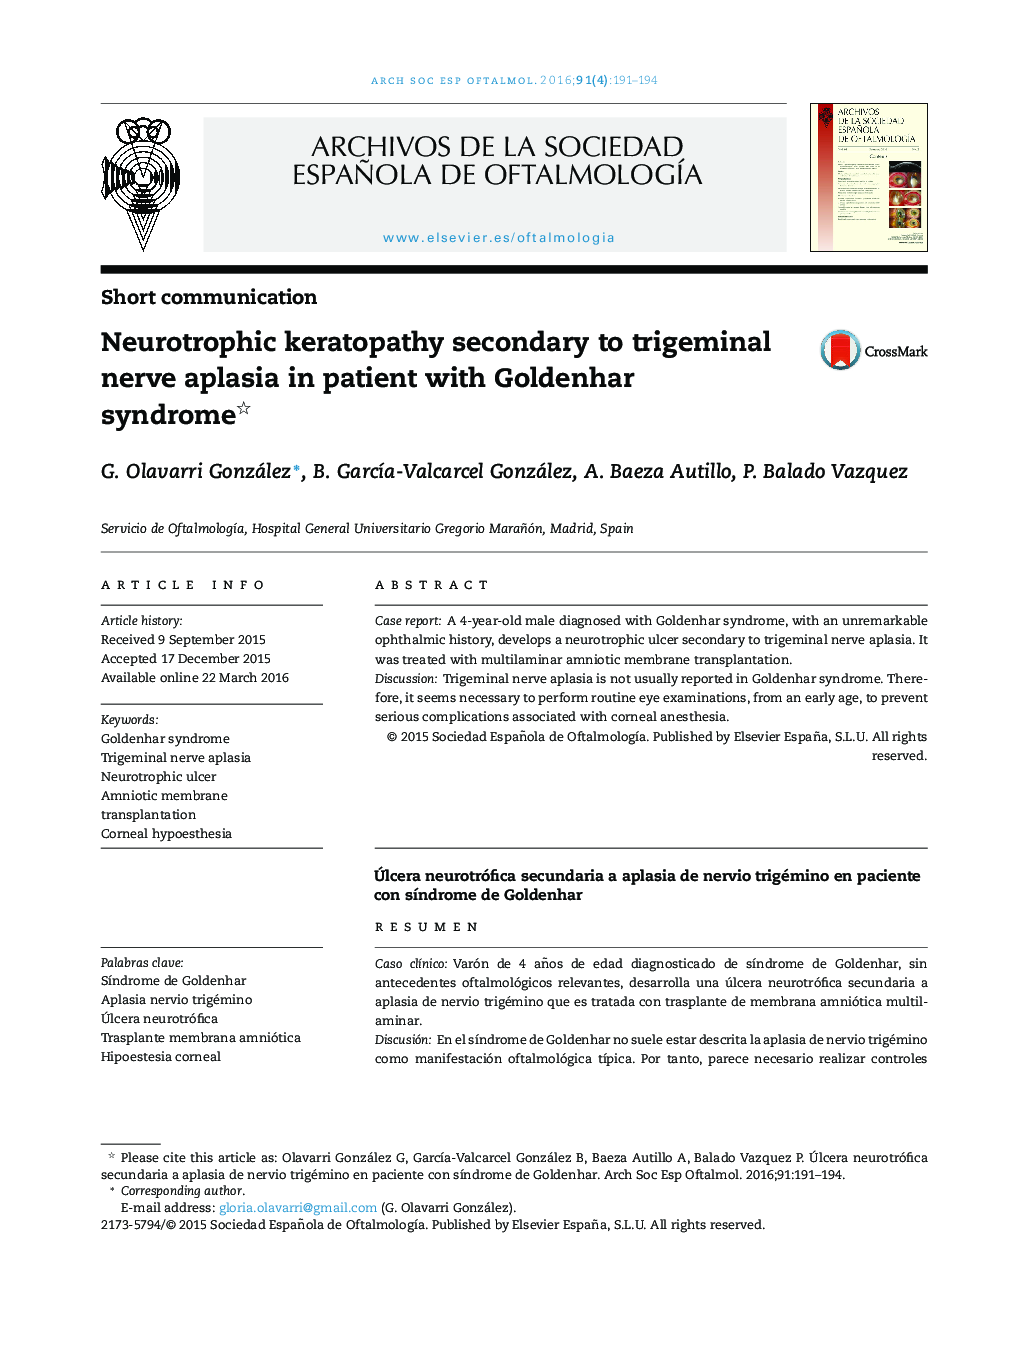 کراتوپاتی نوروپاتی ناشی از آپلاسازی عصب سهگانه در بیمار مبتلا به سندرم طلایی 